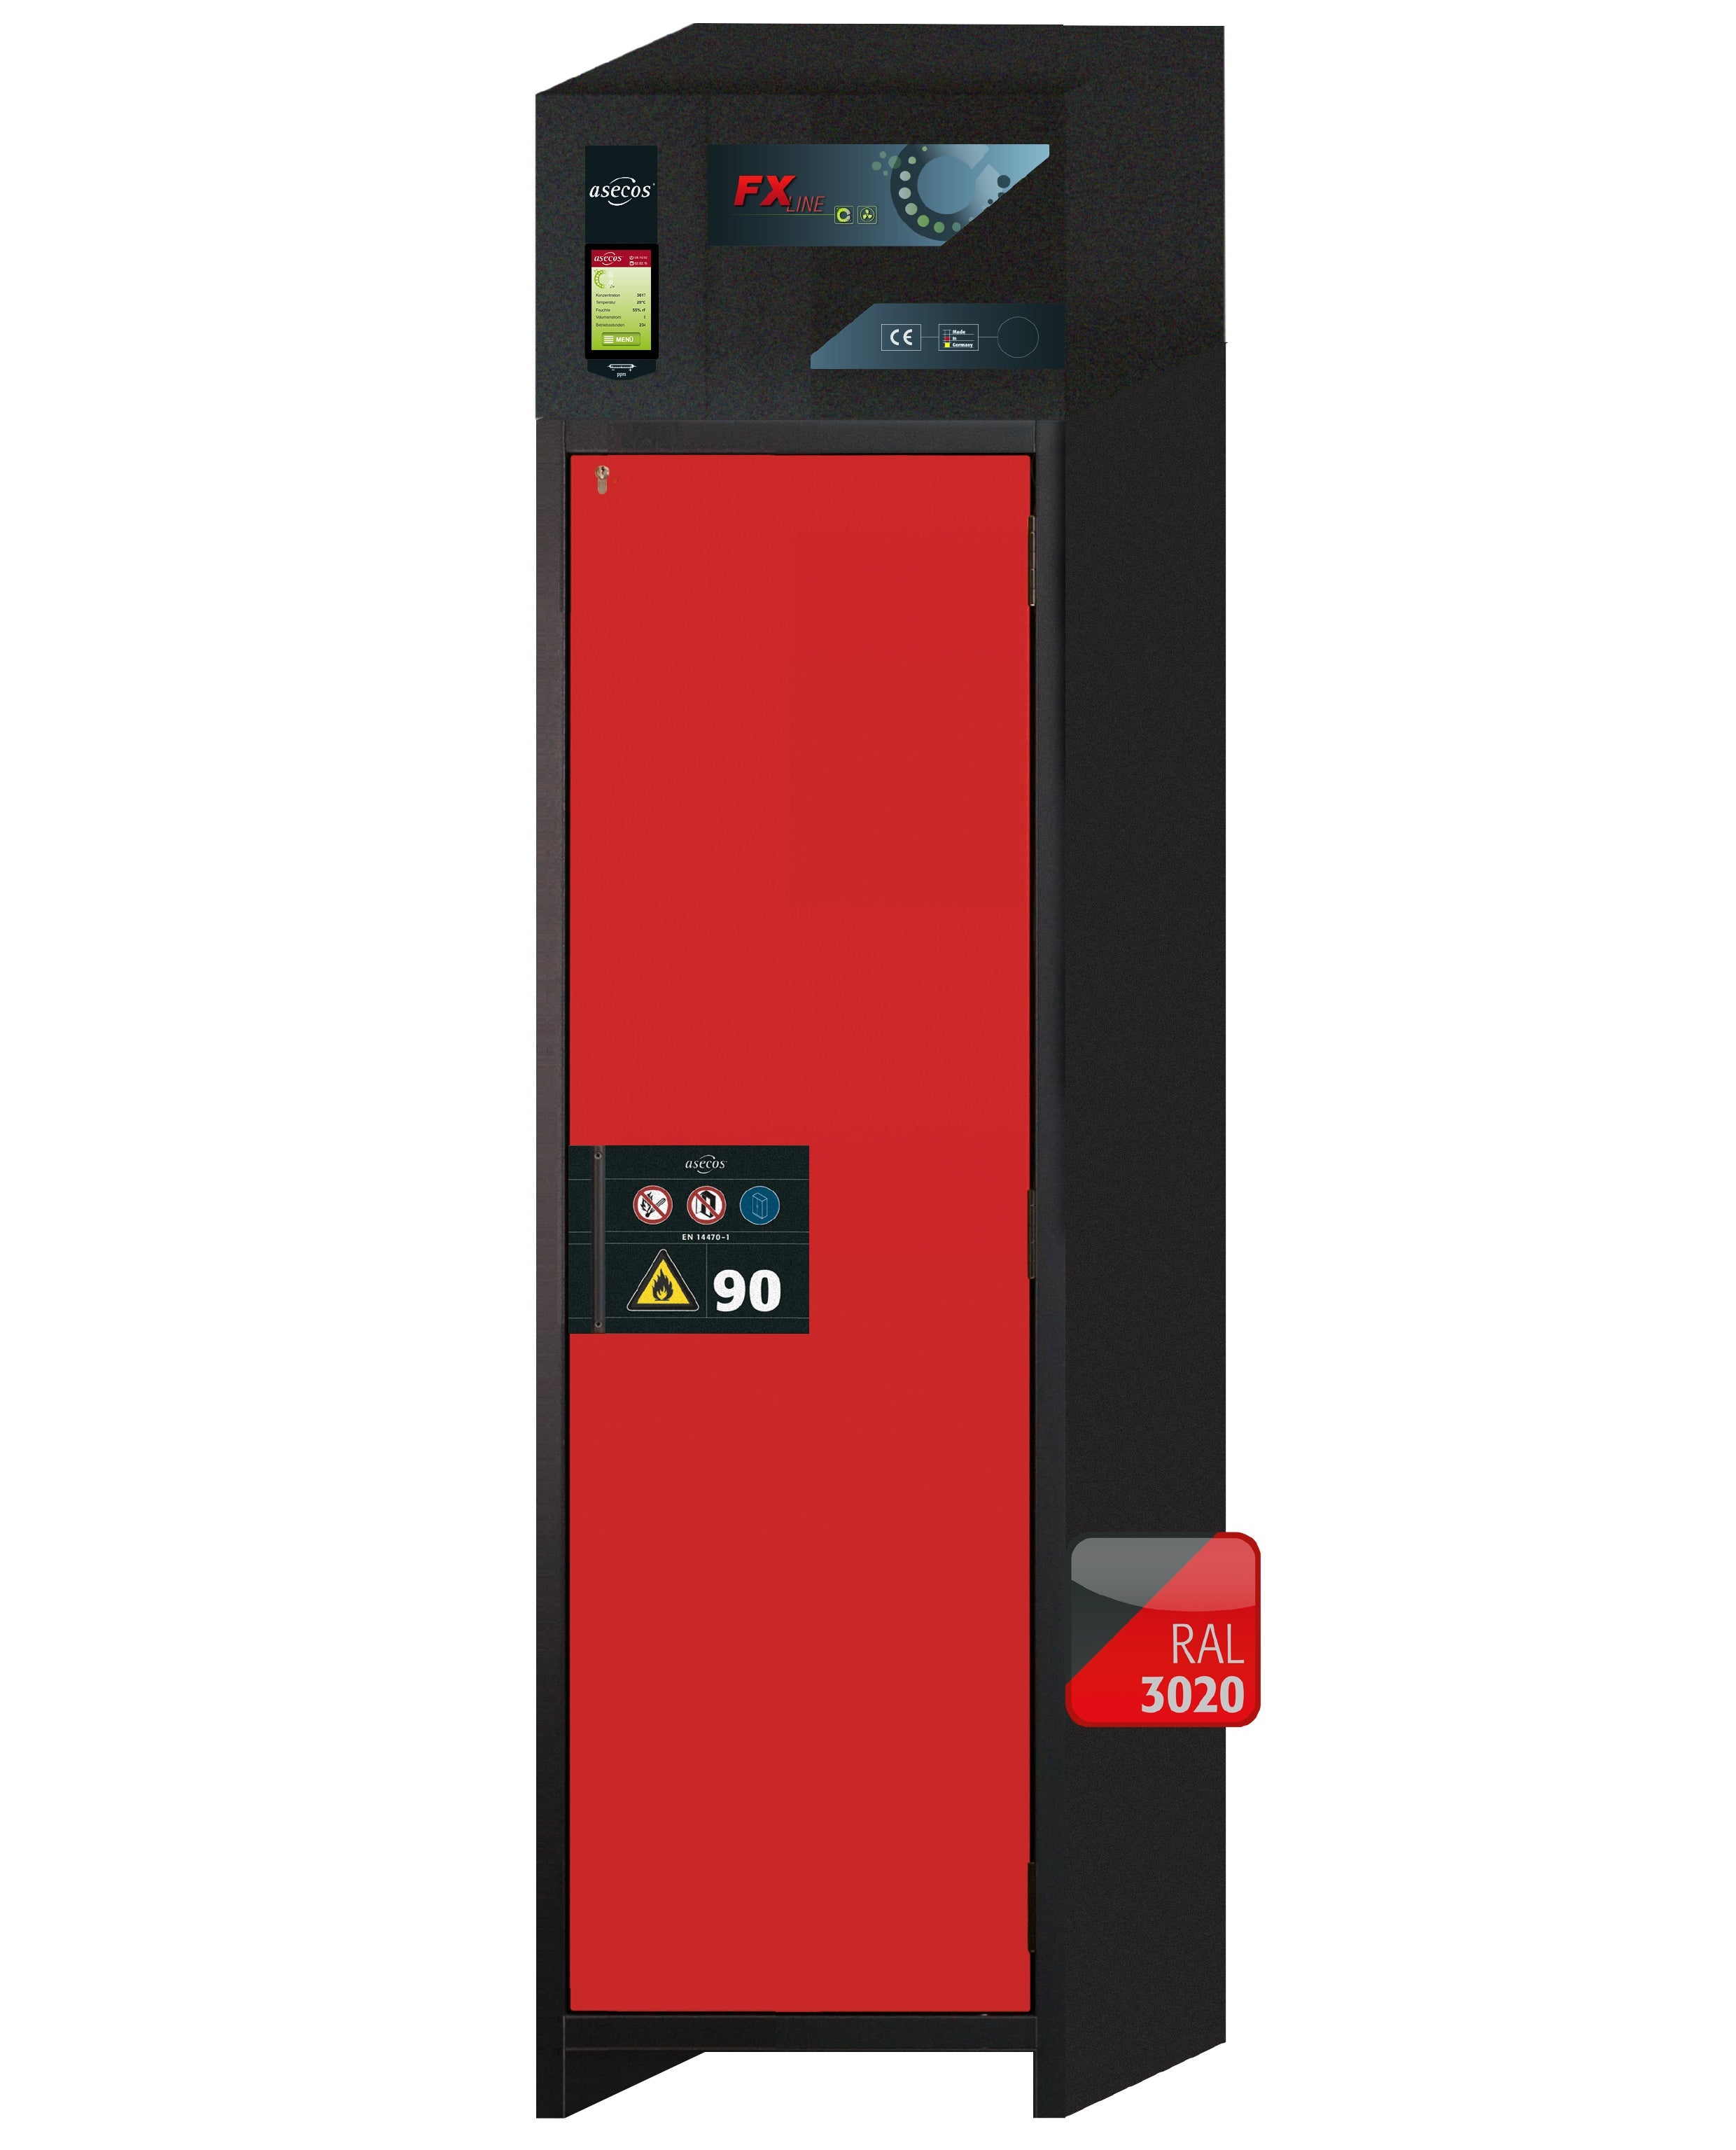 Armoire de filtration d'air recyclé type 90 FX-PEGASUS-90 modèle FX90.229.060.WDACR en rouge signalisation RAL 3020 avec 6 plateaux coulissants standard (acier inoxydable 1.4301)